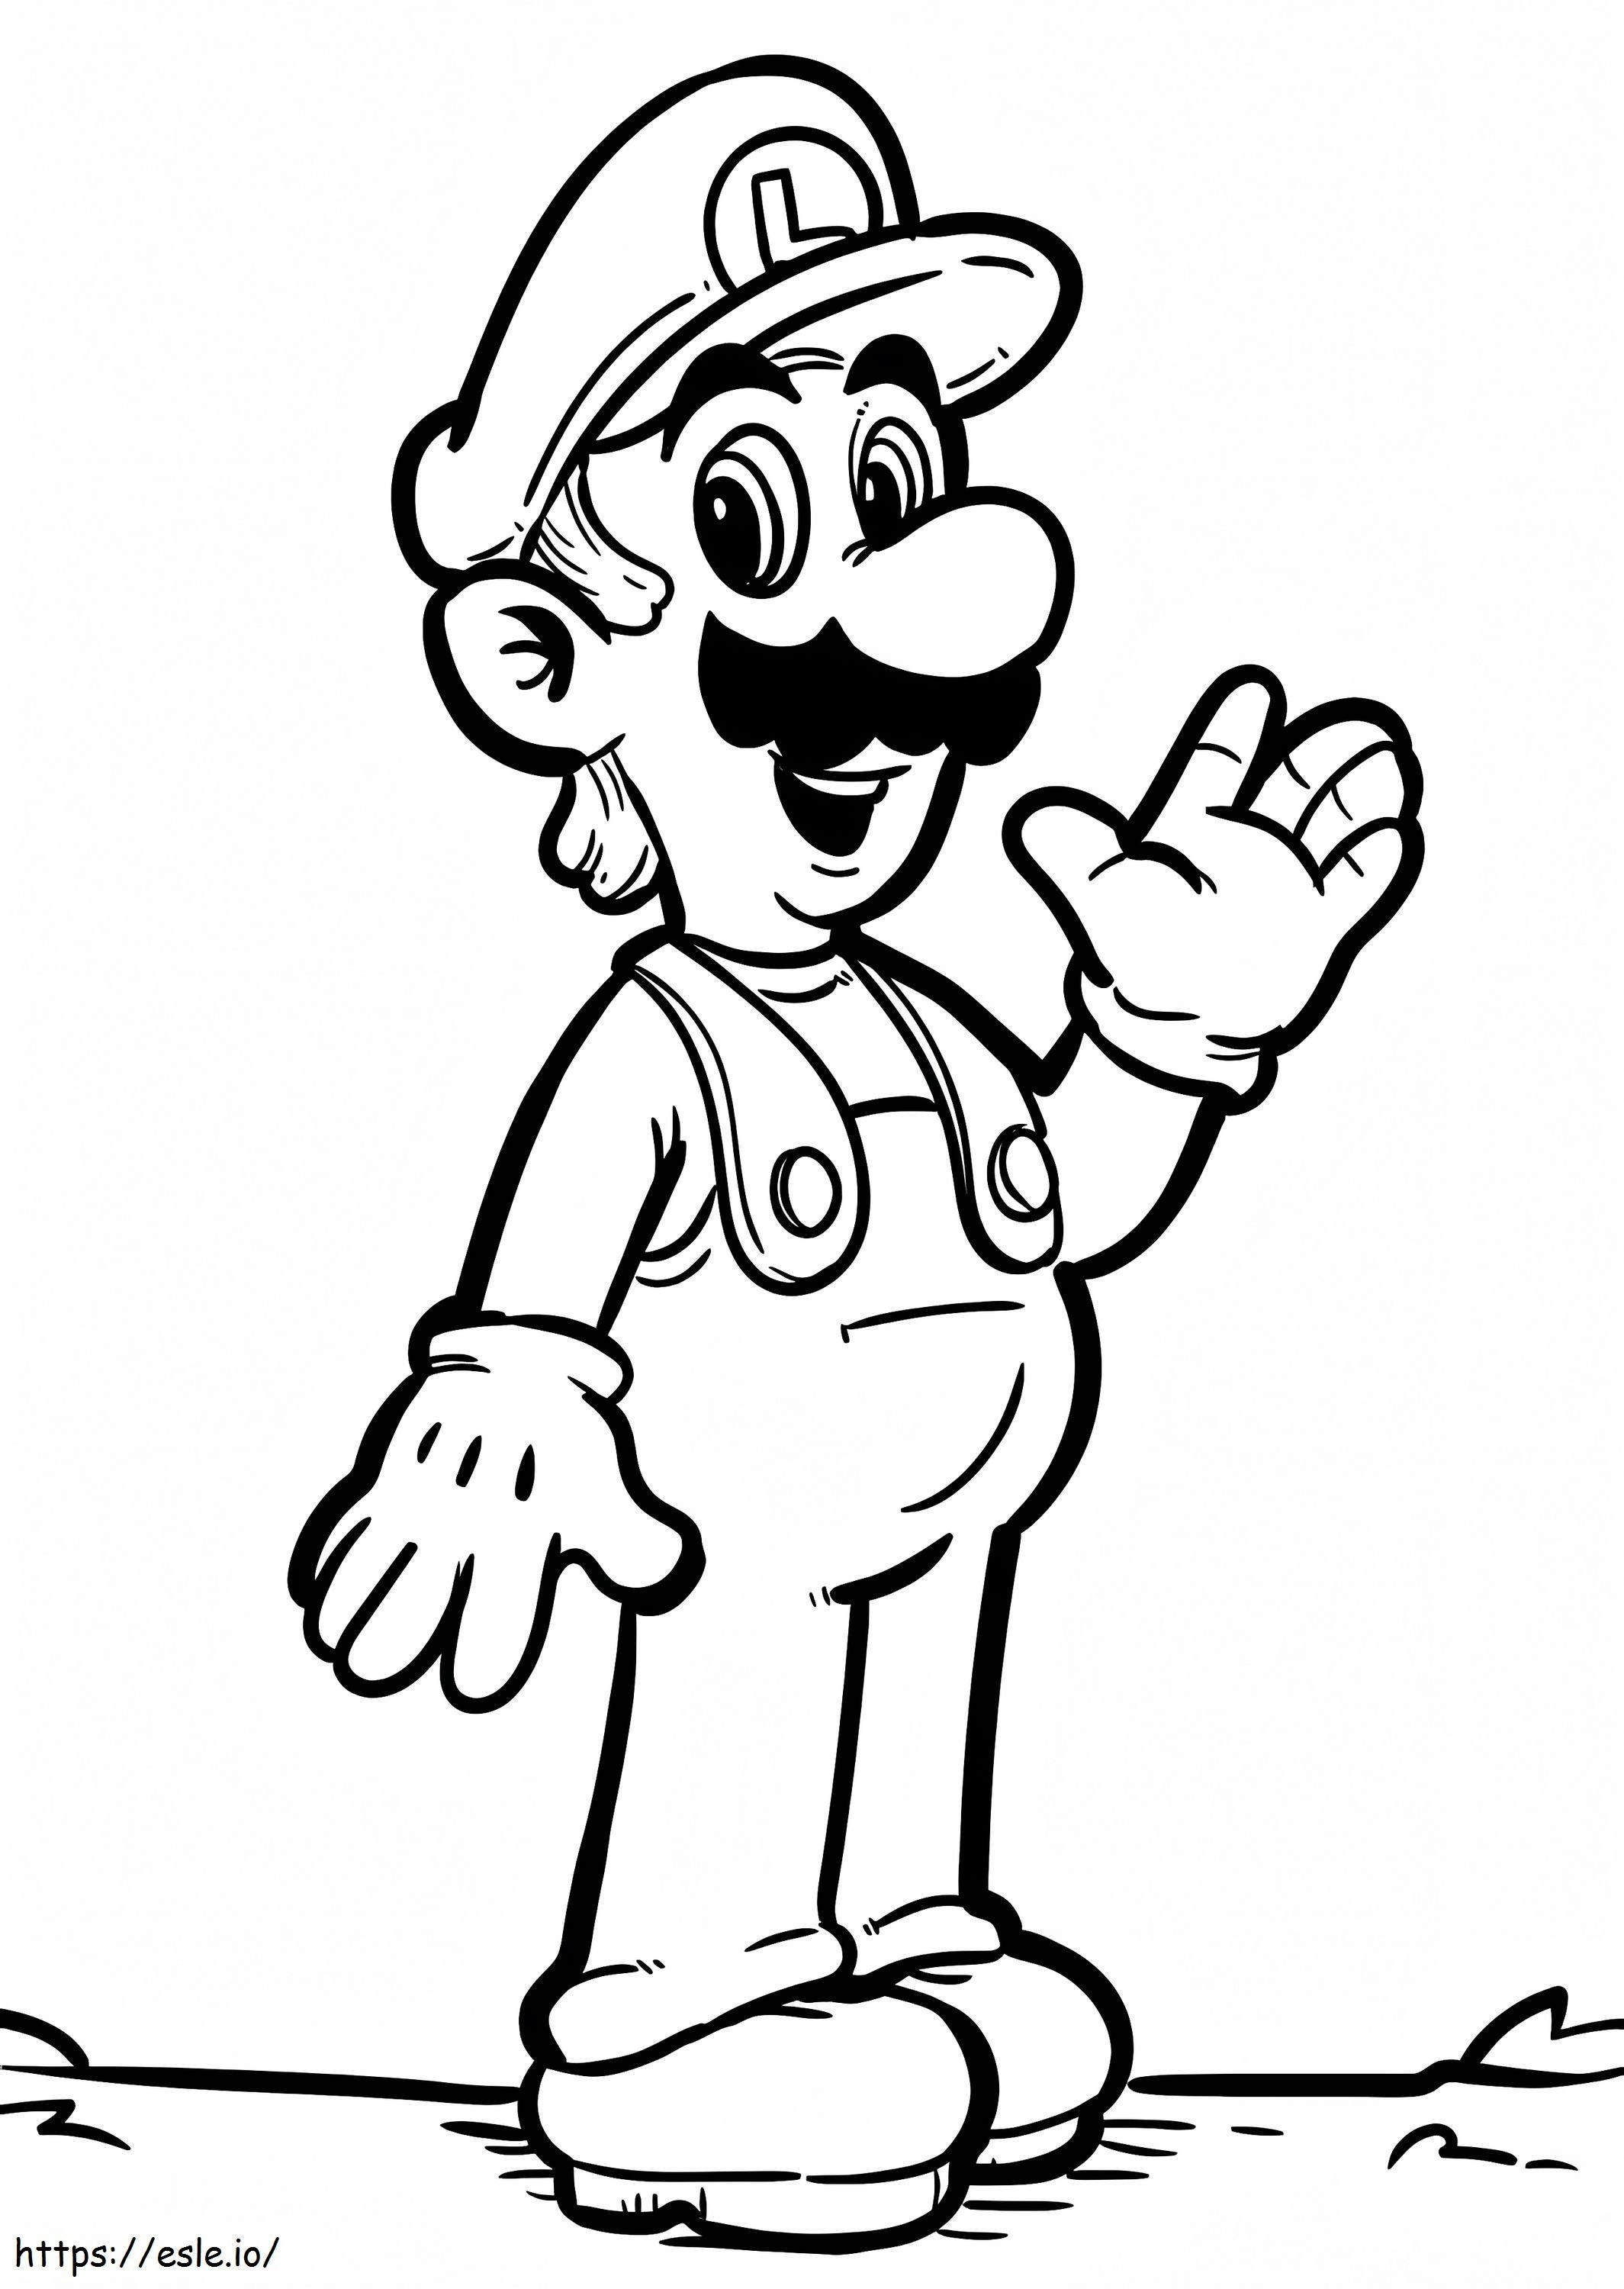 Luigi De Super Mario 2 coloring page